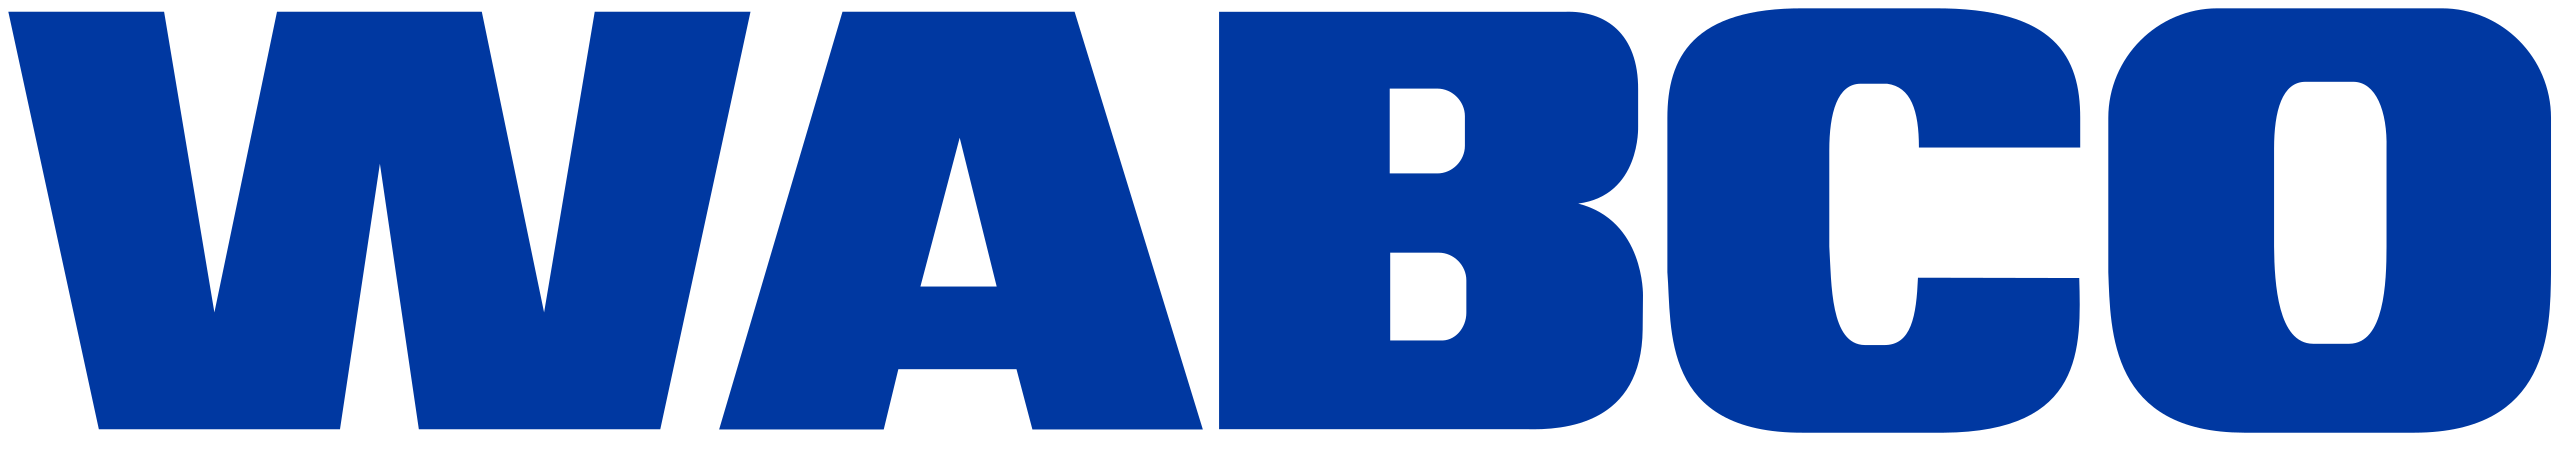 wabco_logo